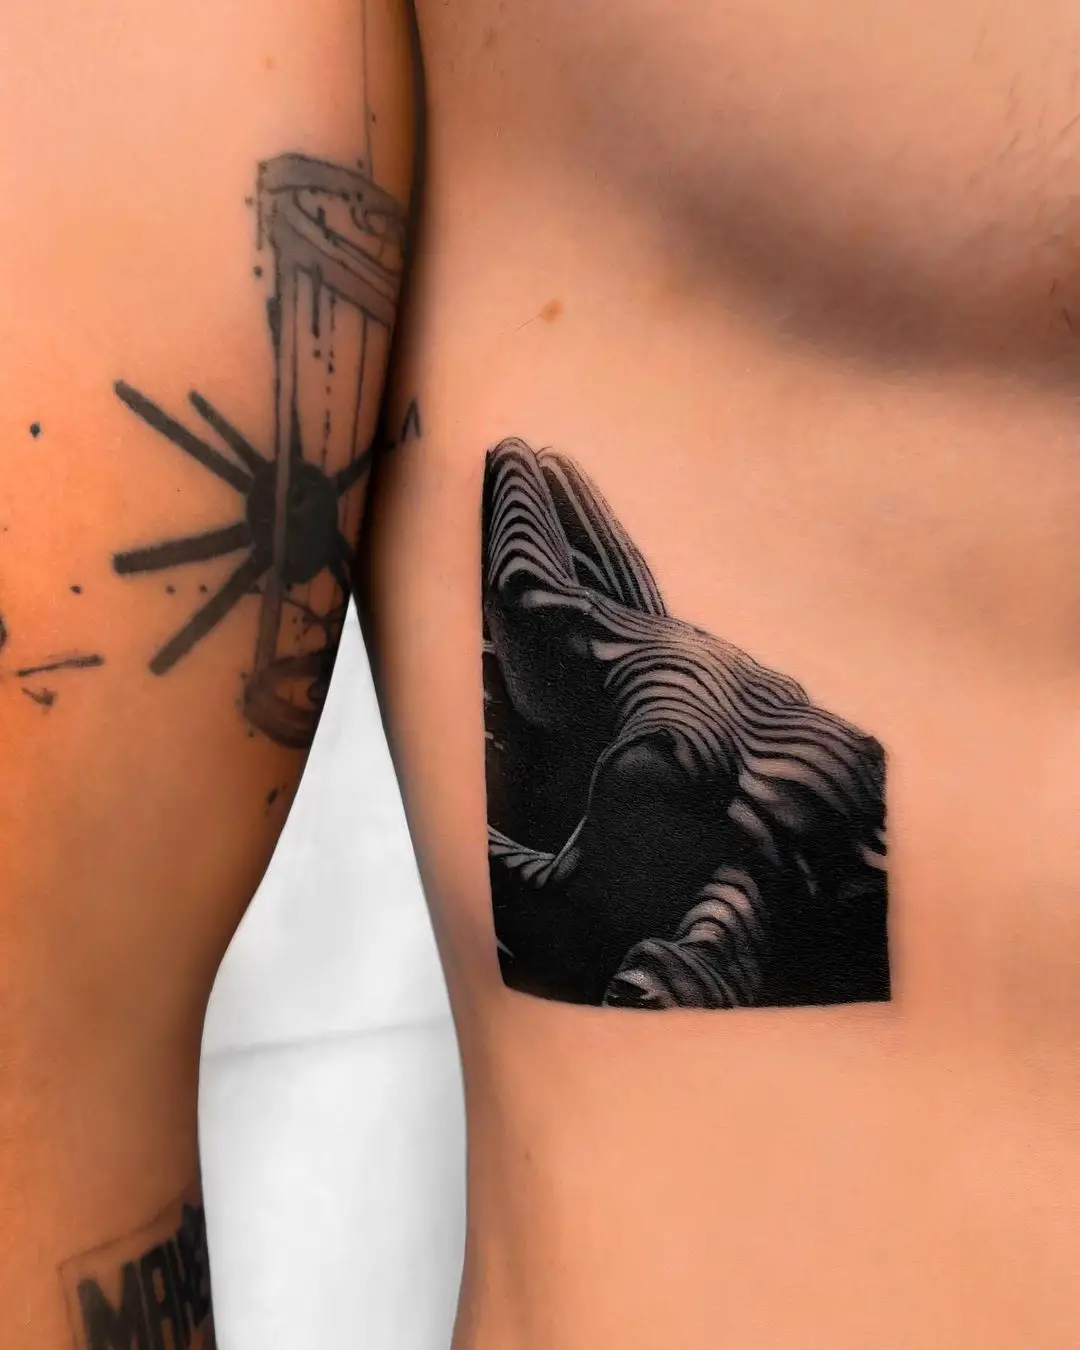 Ribs tattoos by skranka tattoo